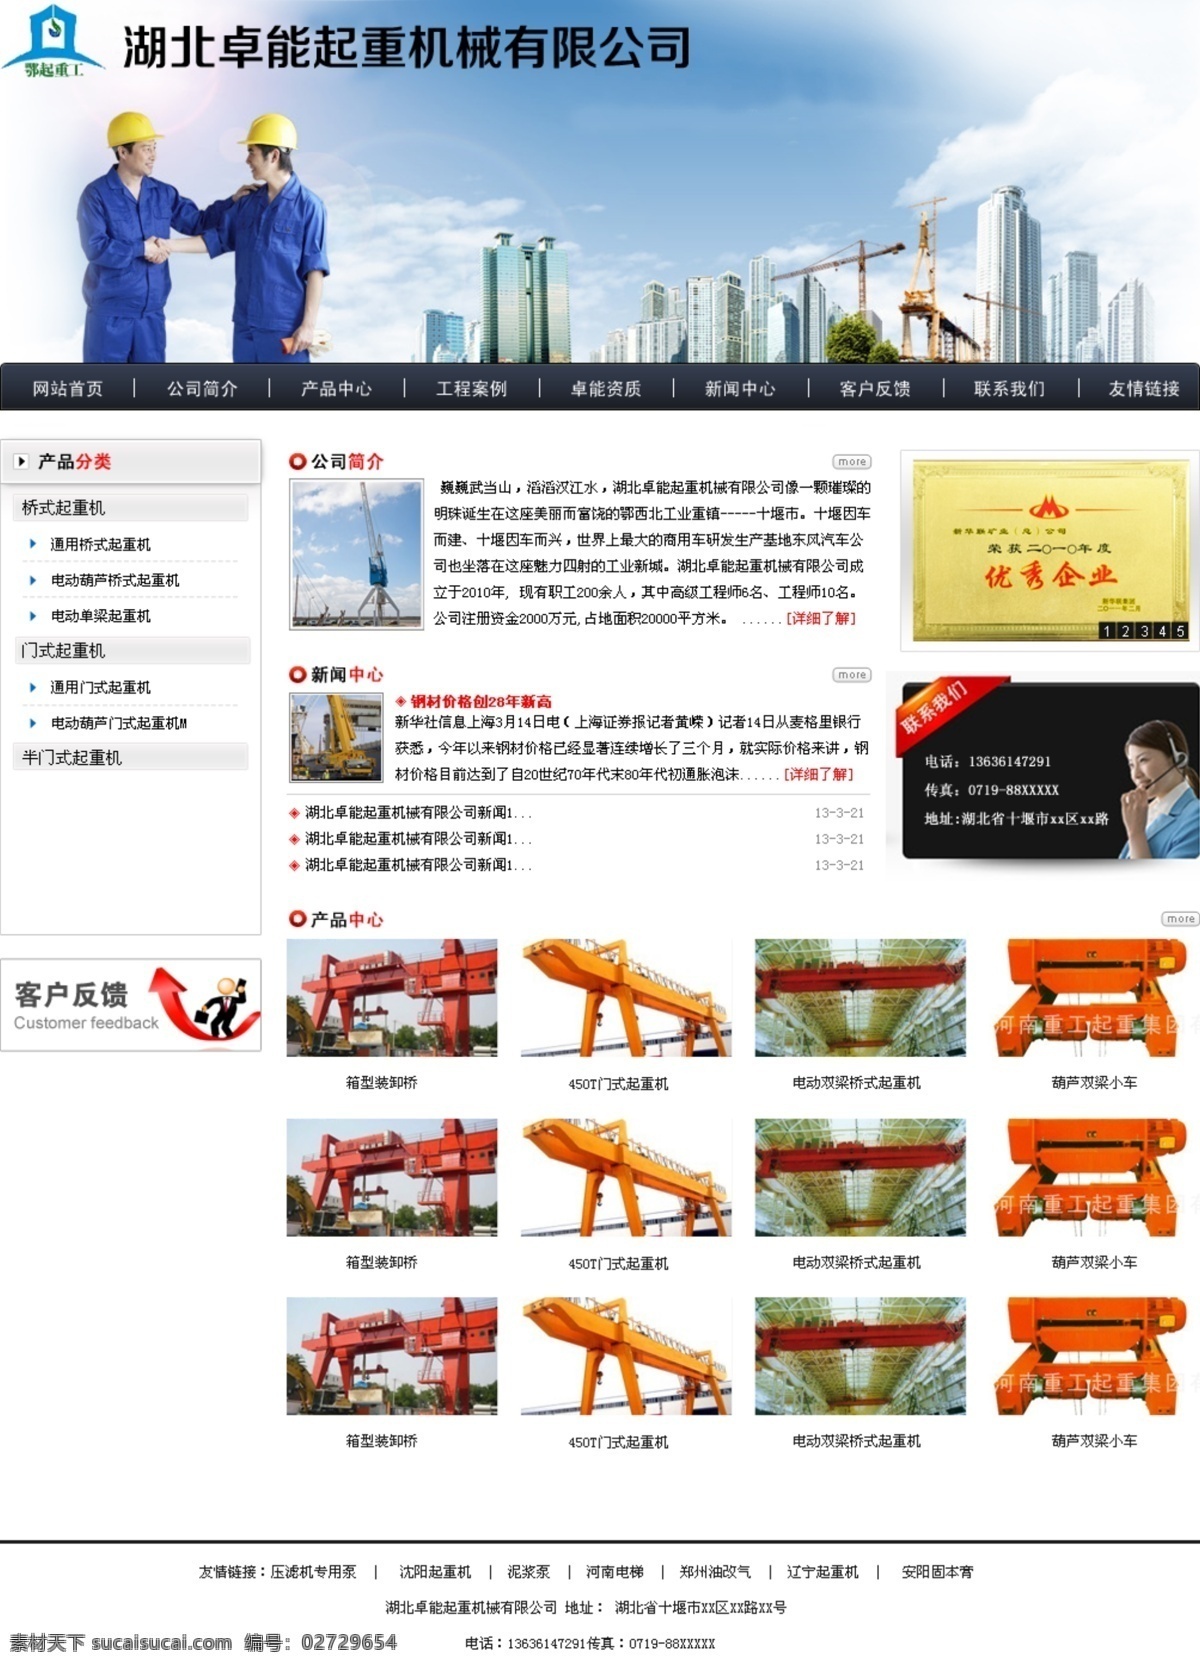 起重机 机械 行业 网站 机械行业 机械网站 模板 起重机网页 蓝色 商务 中文模板 网页模板 源文件 白色